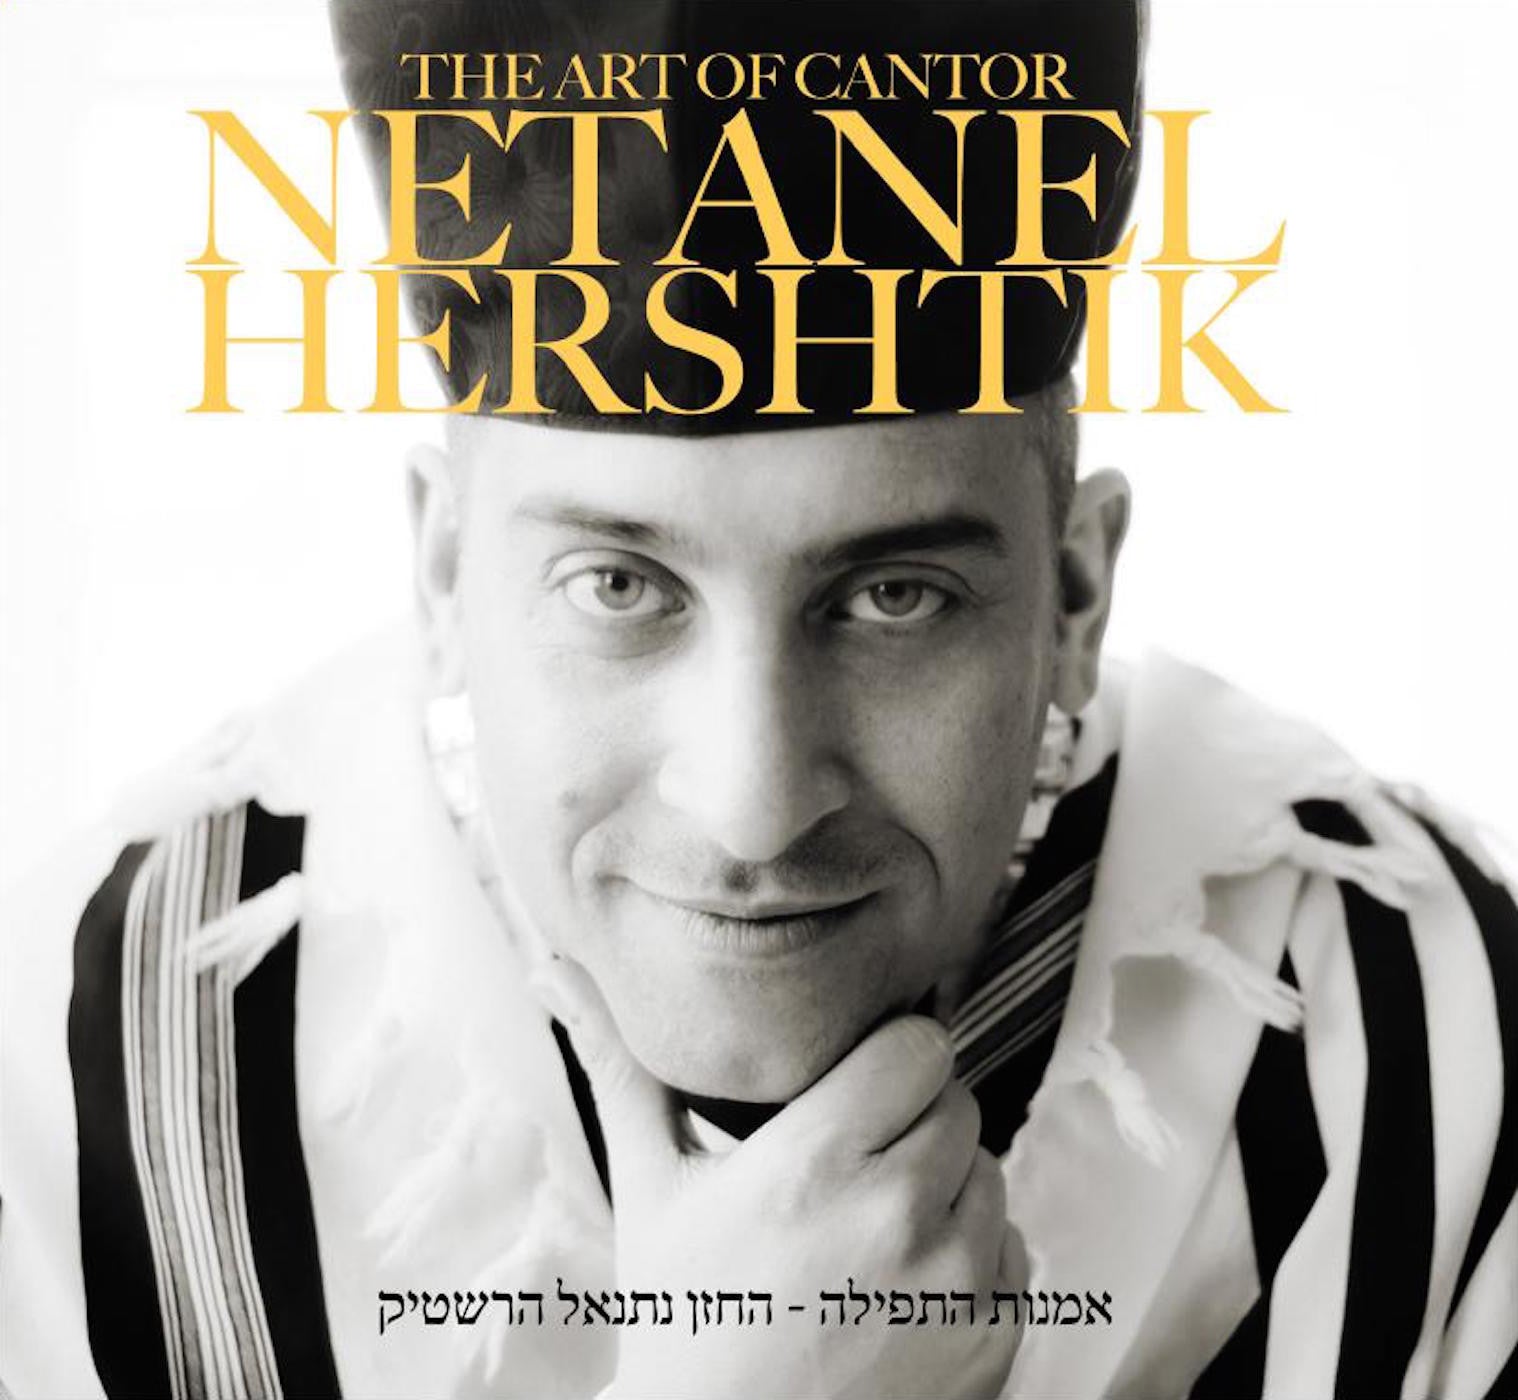 Netanel Hershtik - The Art Of Cantor